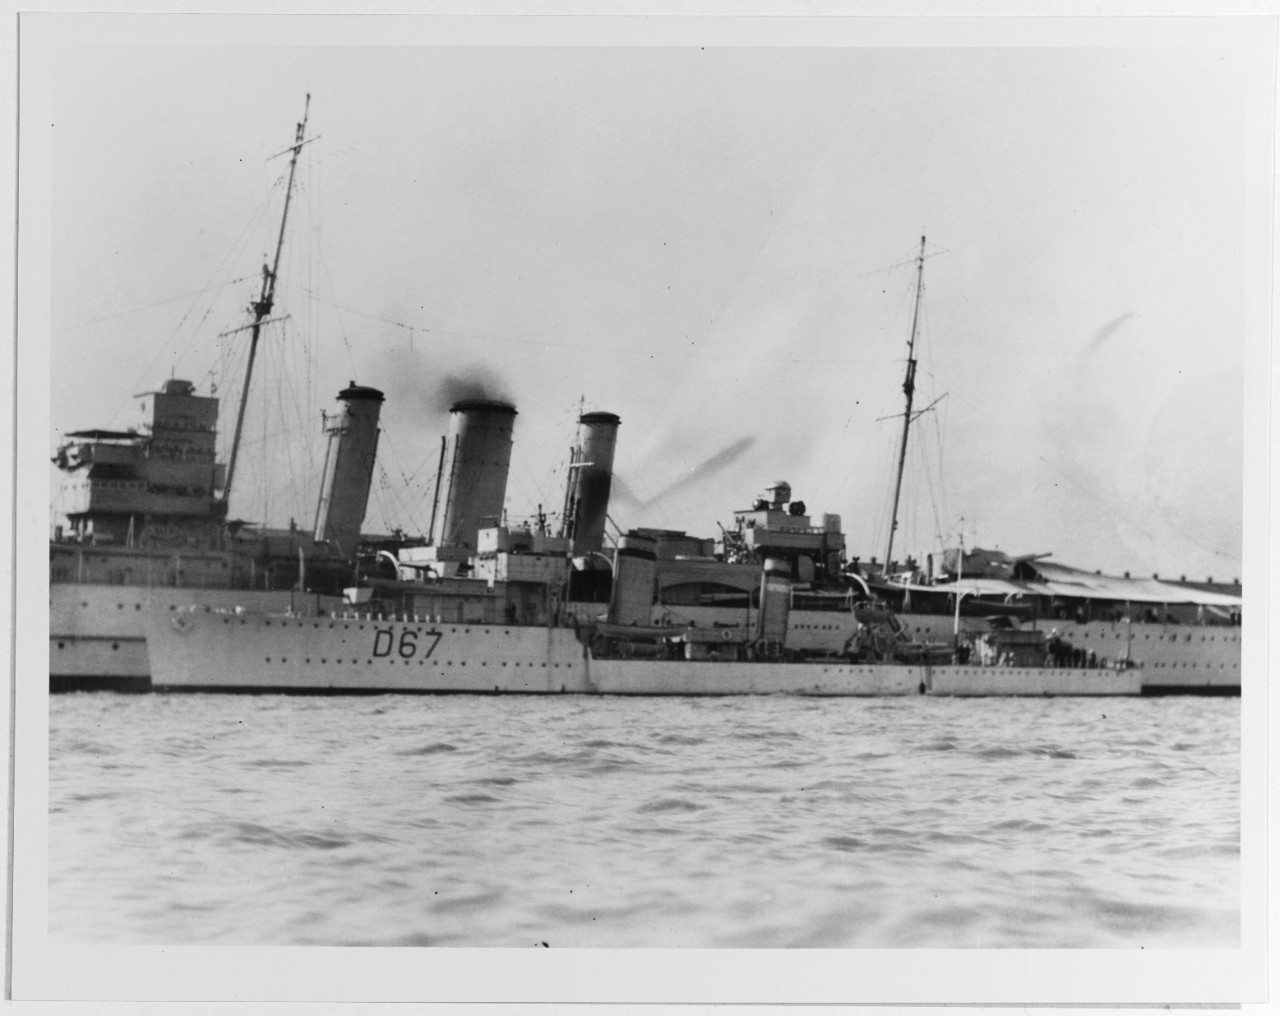 WISHART (British destroyer, 1920)